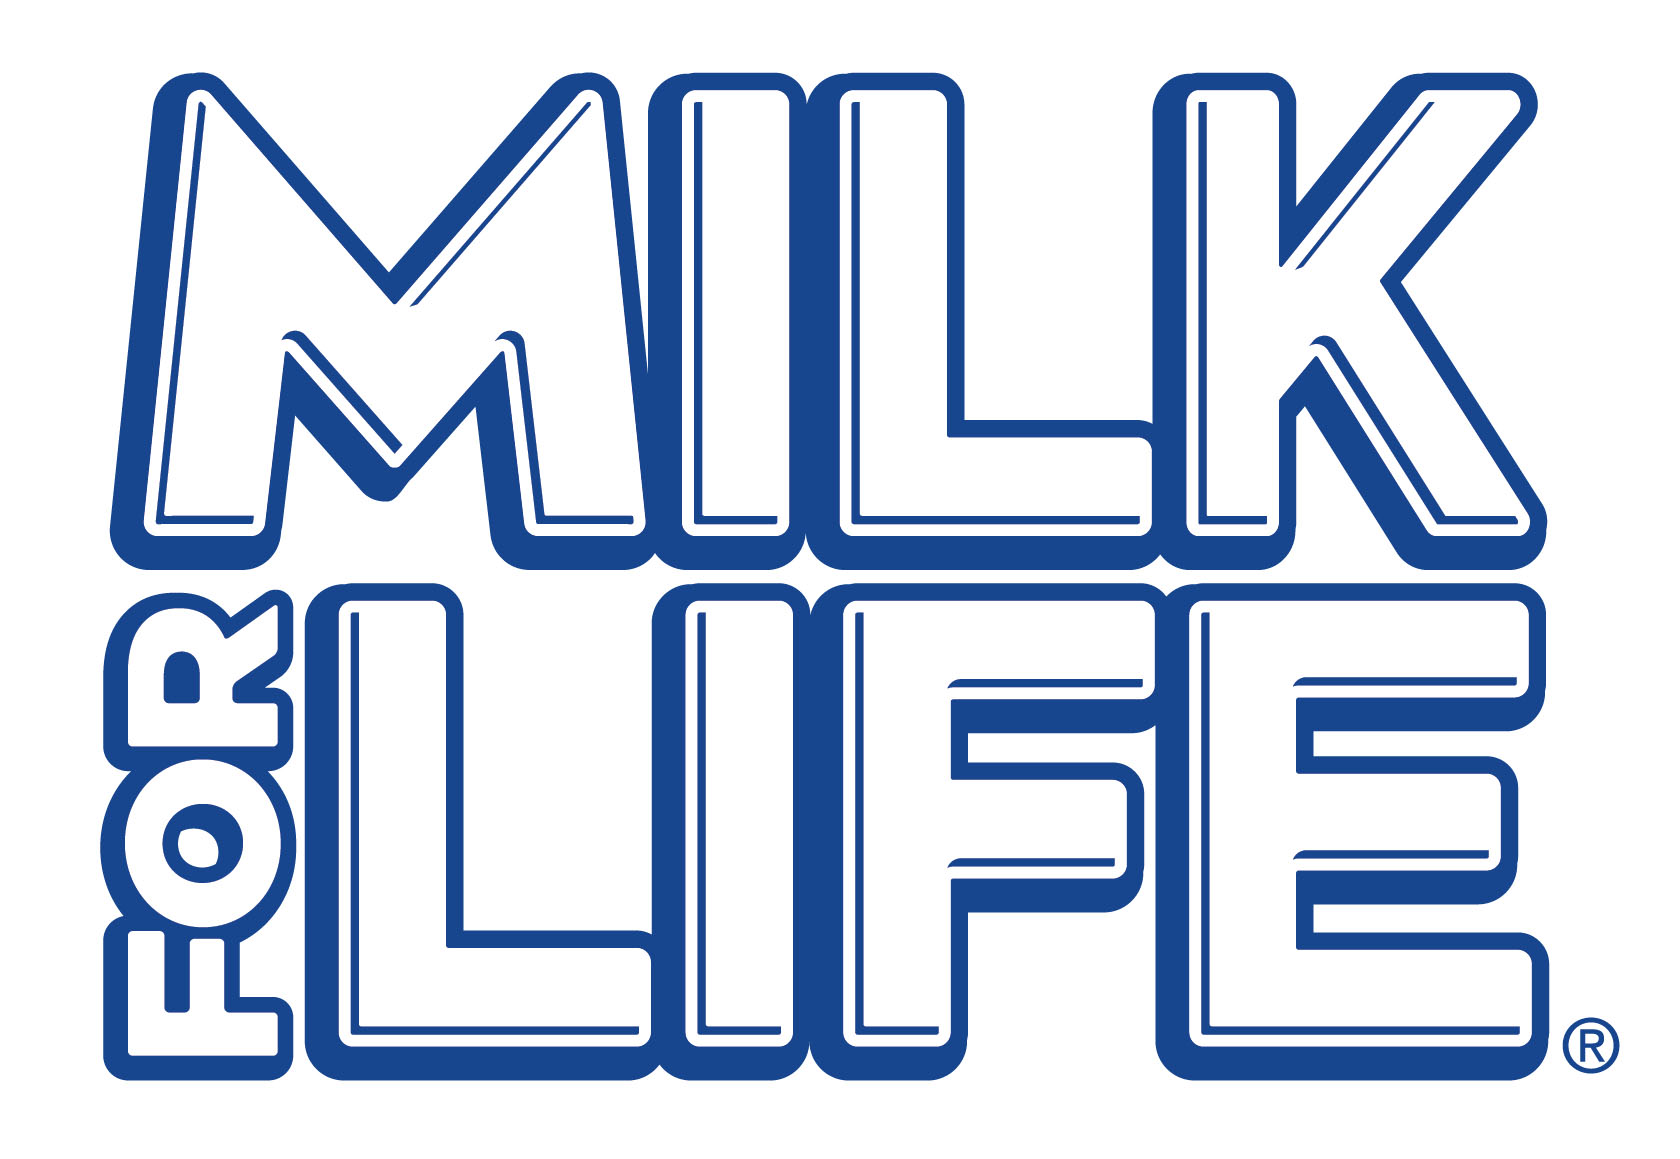 Milk For Life logo